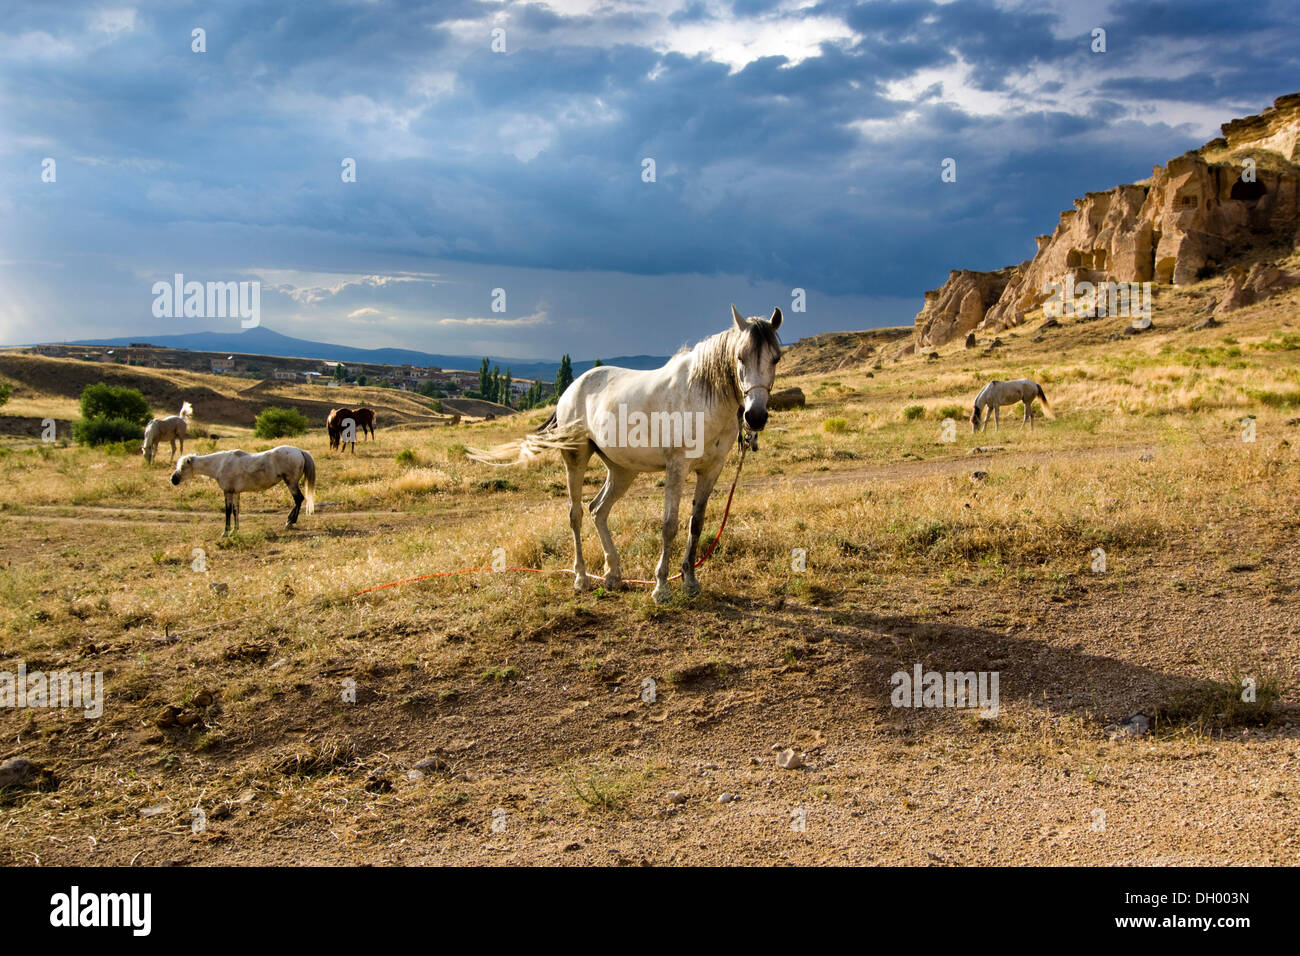 Chevaux dans une atmosphère d'orage paysage en tuf, Cappadoce, Anatolie centrale, Turquie, Asie Banque D'Images